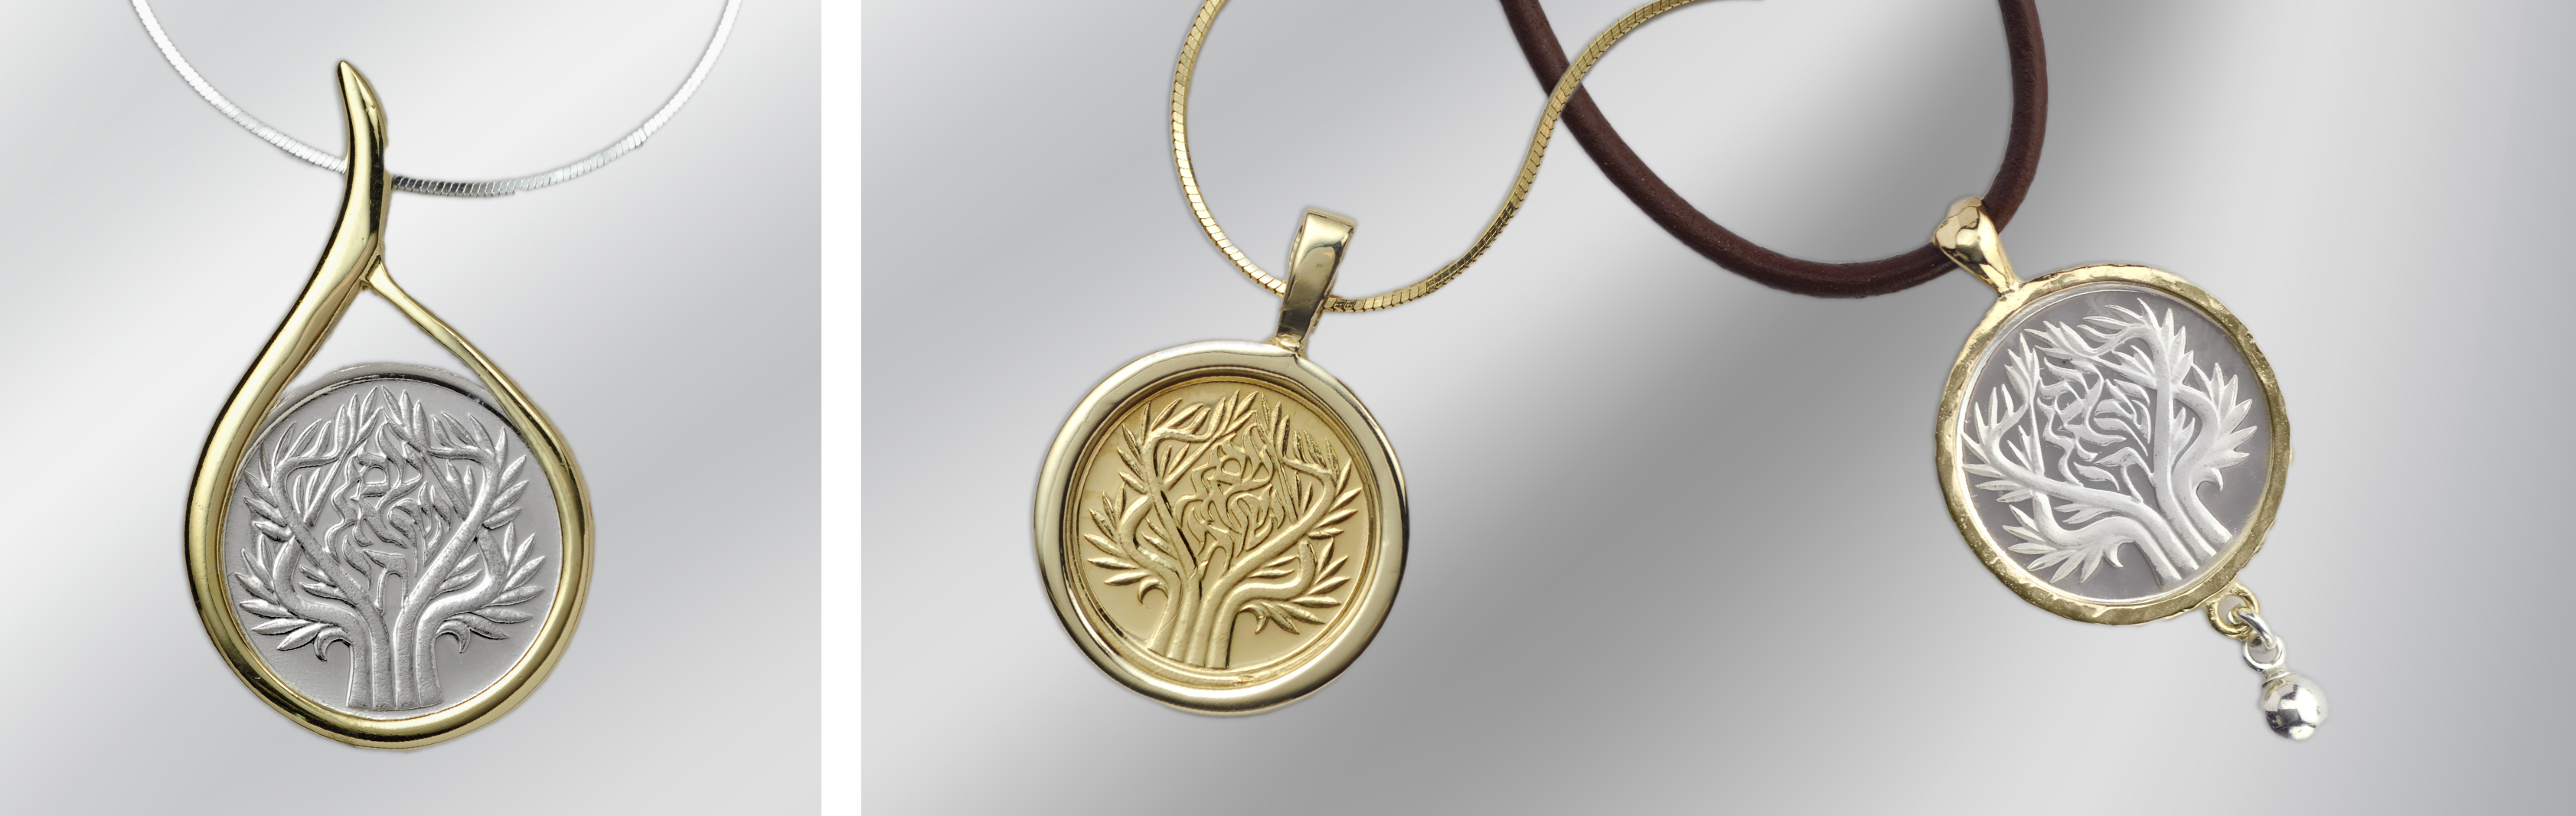 עדליון עץ החיים - תכשיטי כסף זהב 14 קראט בשילוב מדליית עץ החיים